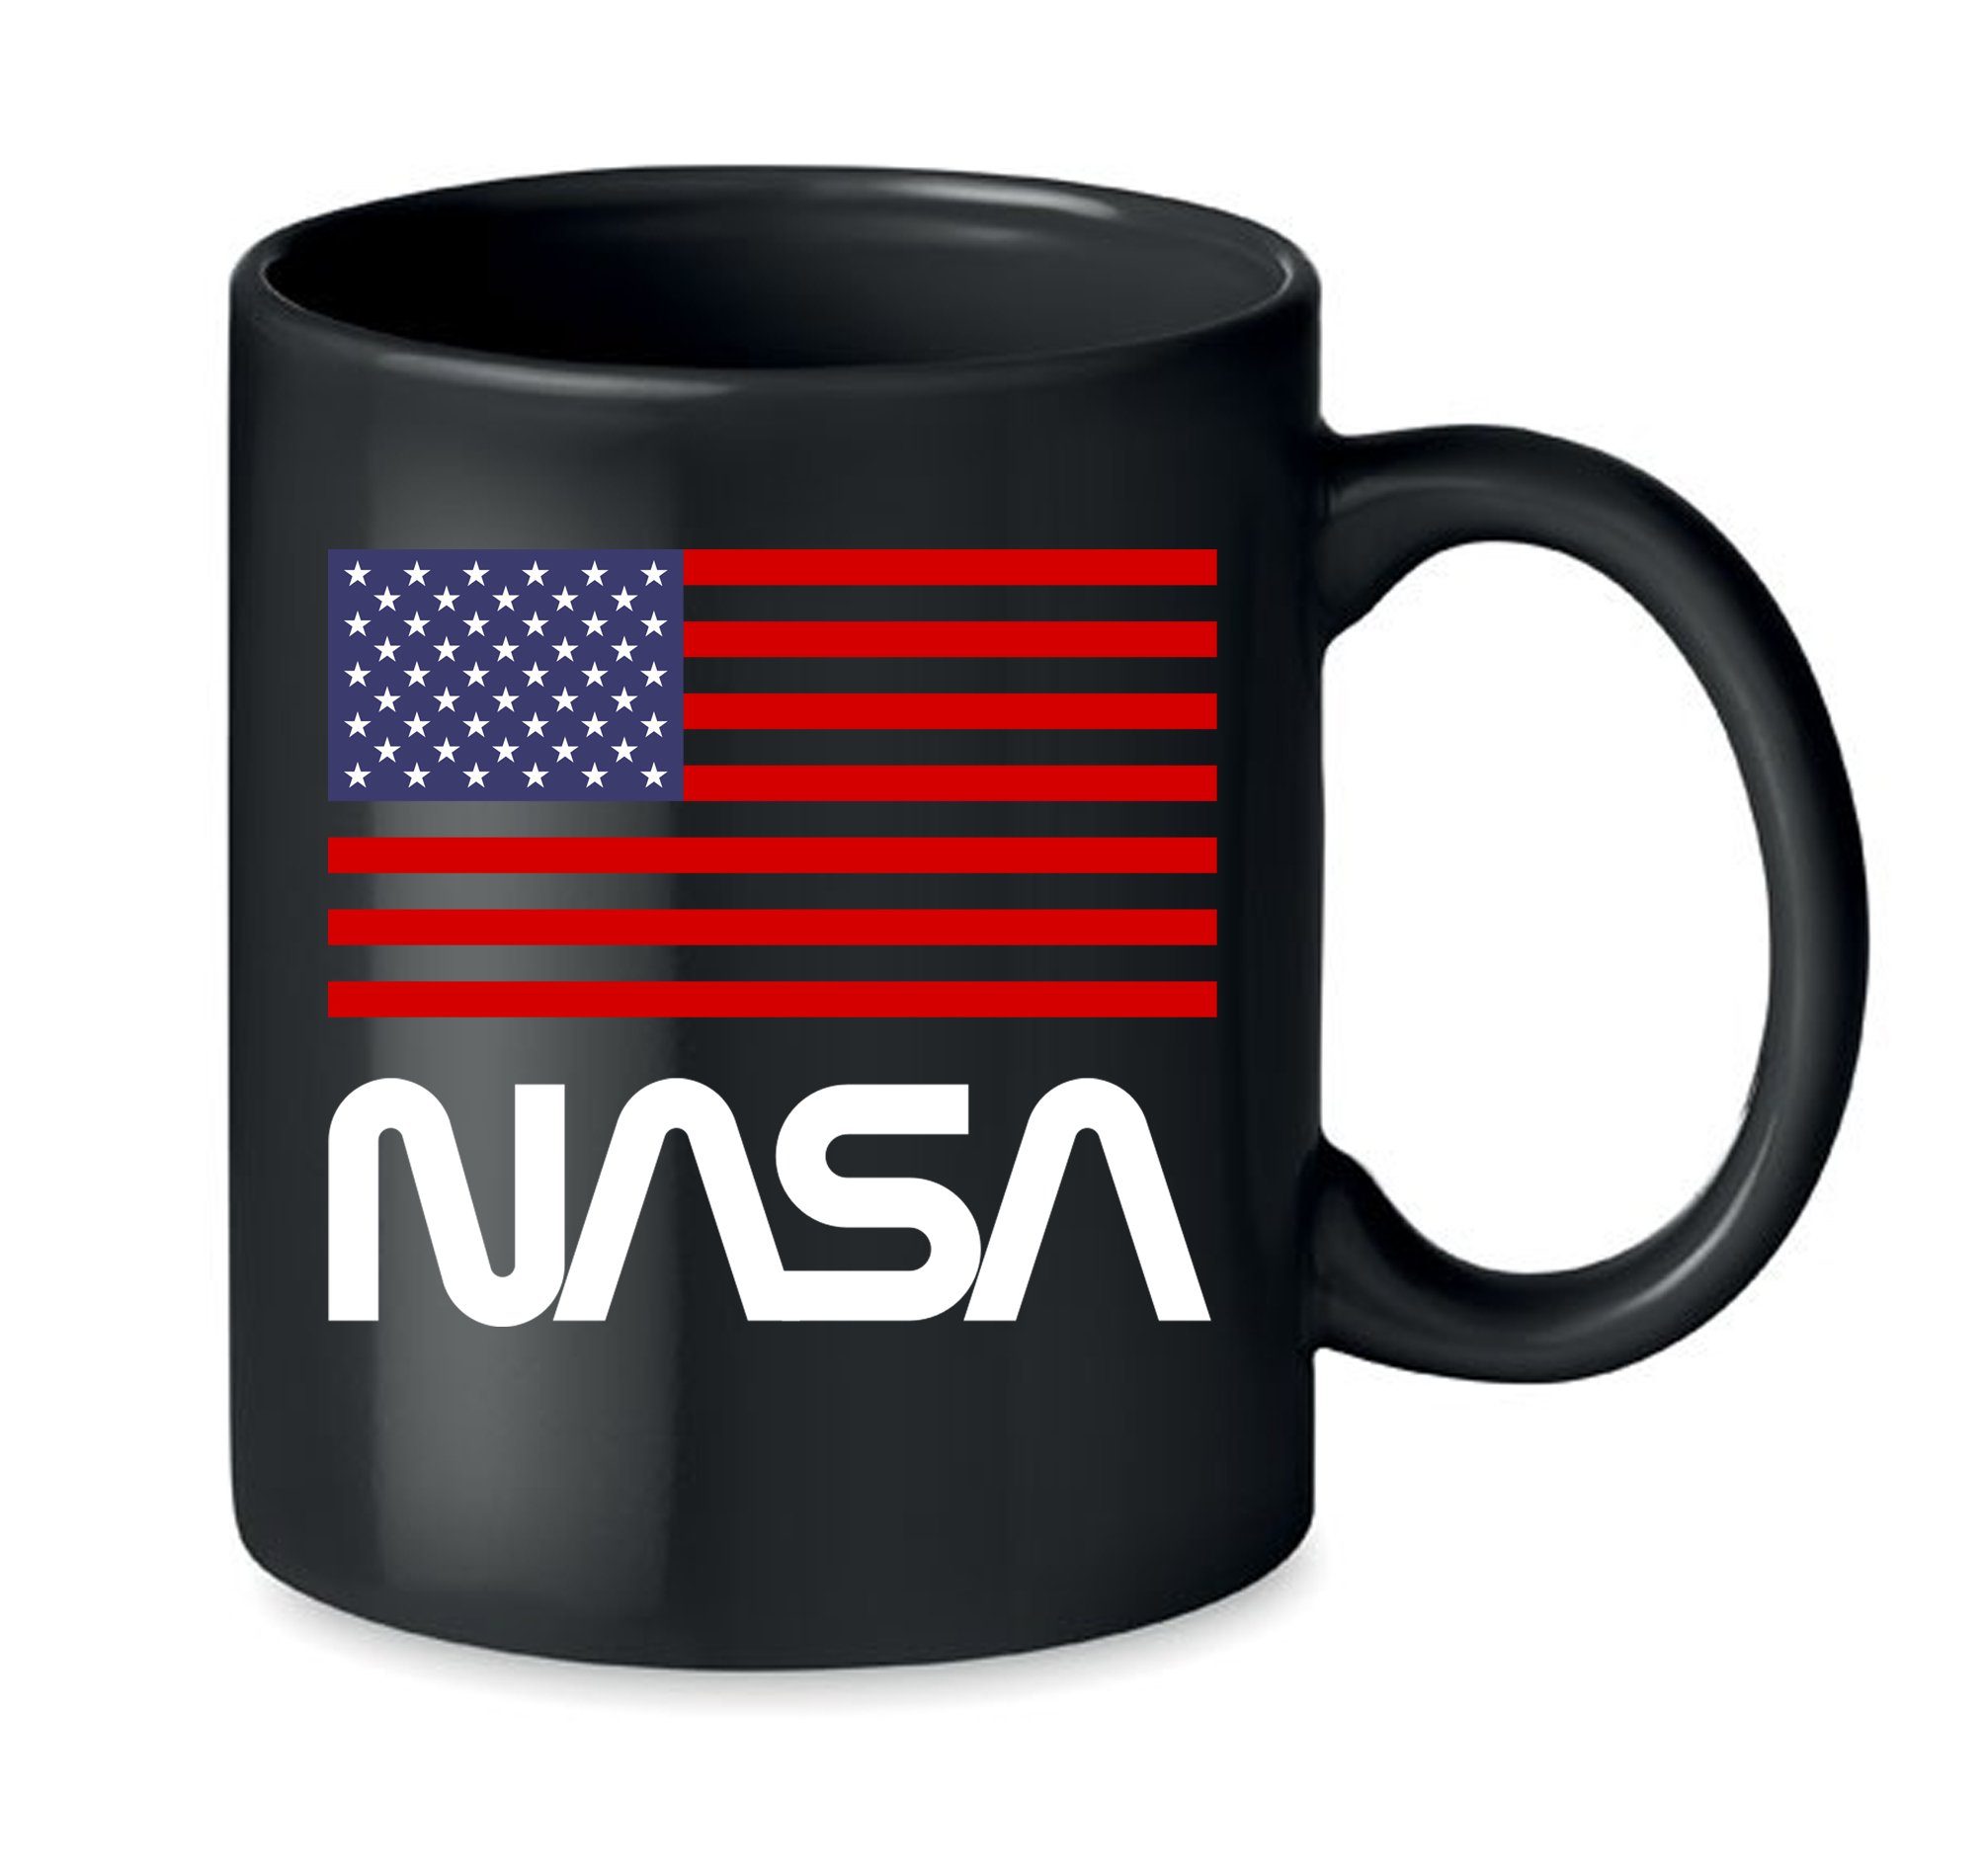 Mission, Nasa Space Blondie Mars & Tasse USA Spülmaschinenfest Keramik, Schwarz Rakete mond Brownie Elon